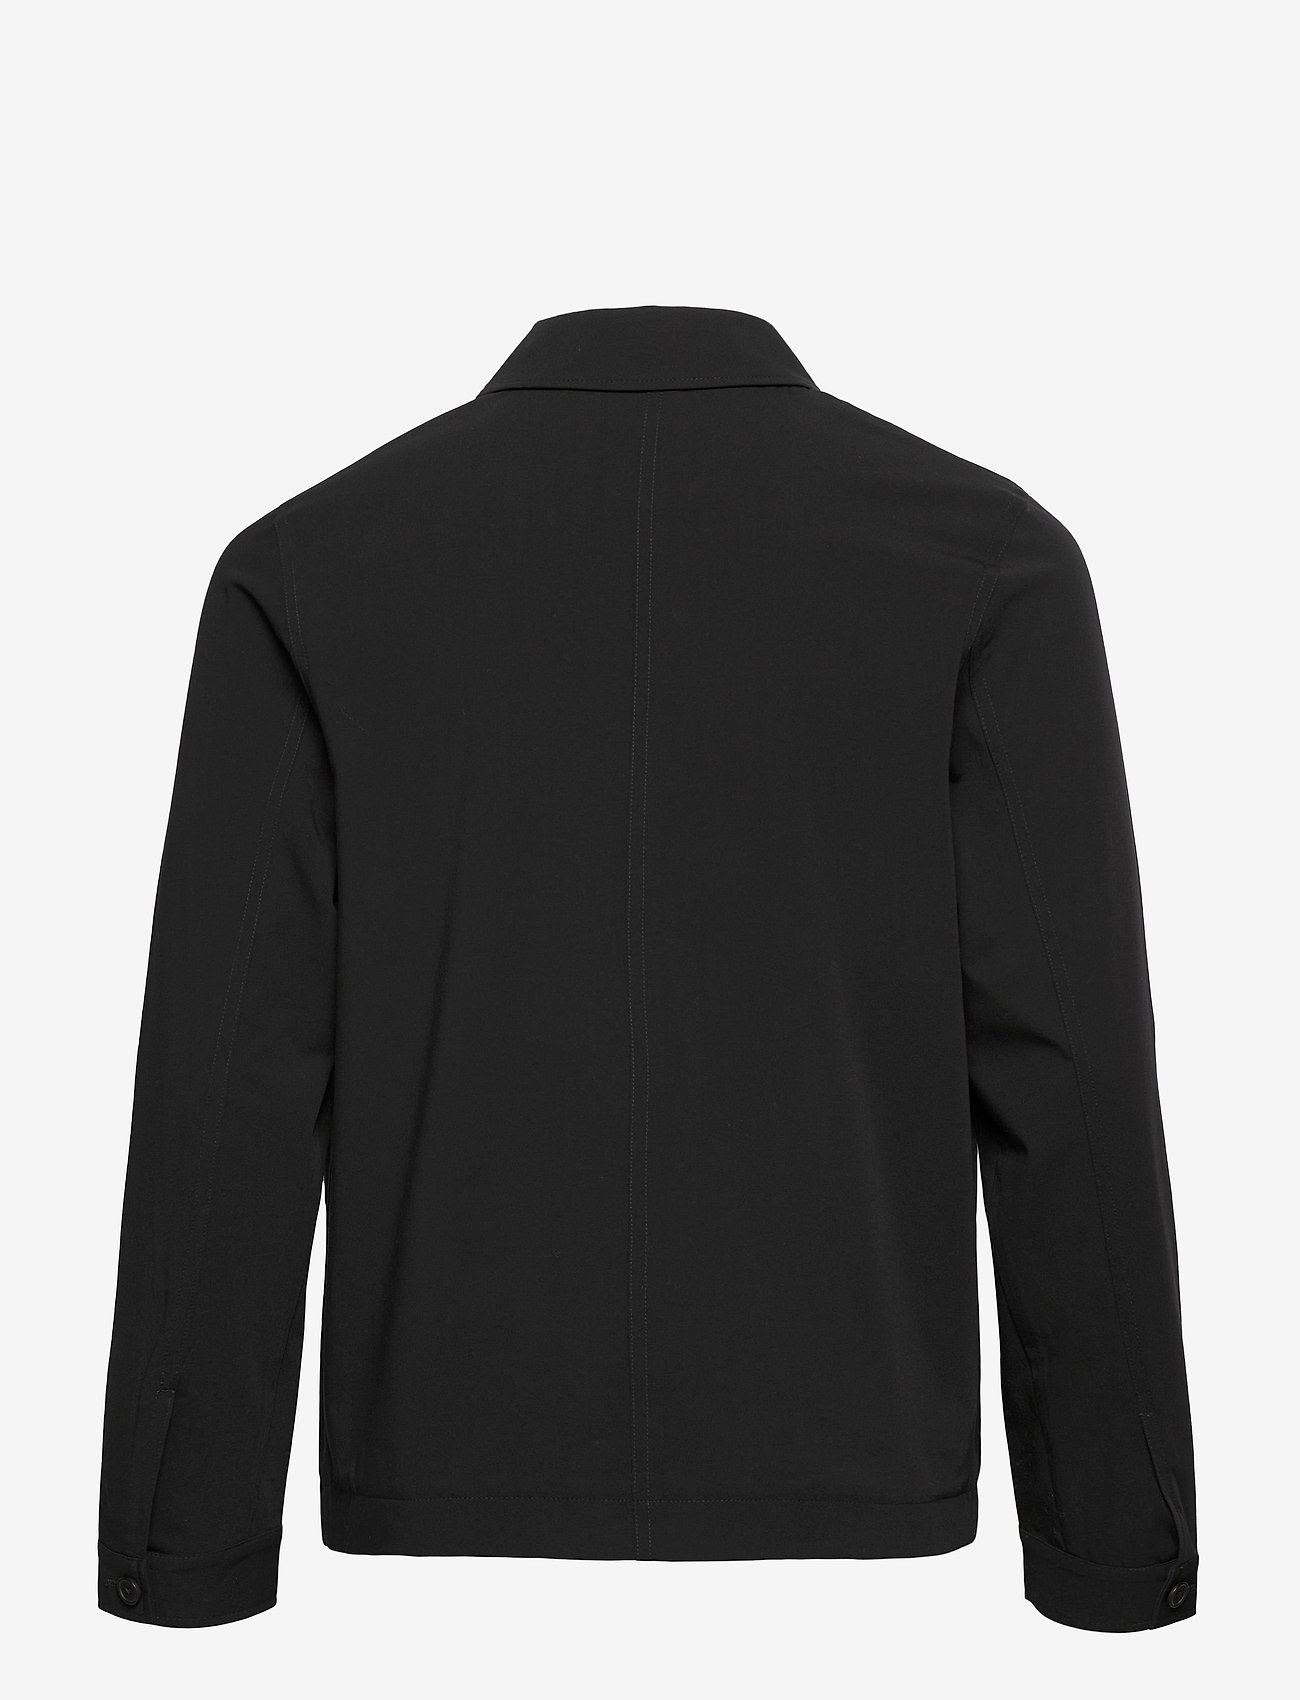 Samsøe Samsøe - Worker x jacket 10931 - clothing - black - 1